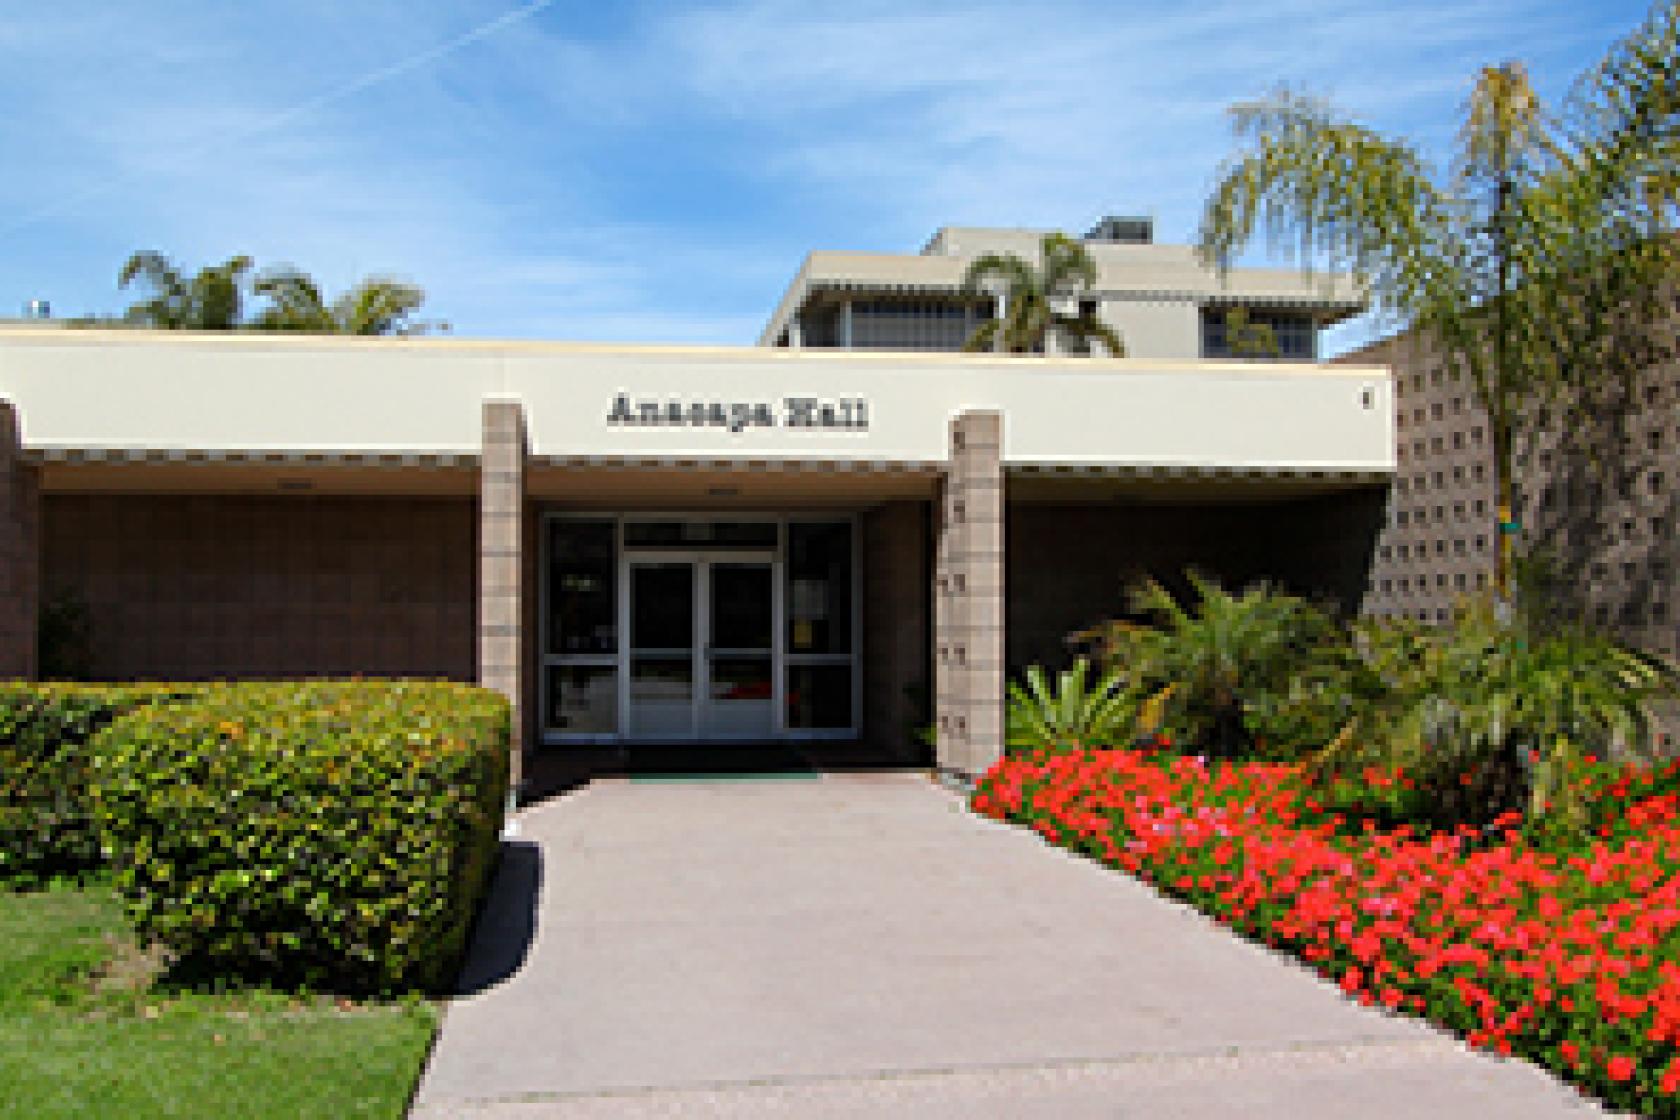 Anacapa Residence Hall